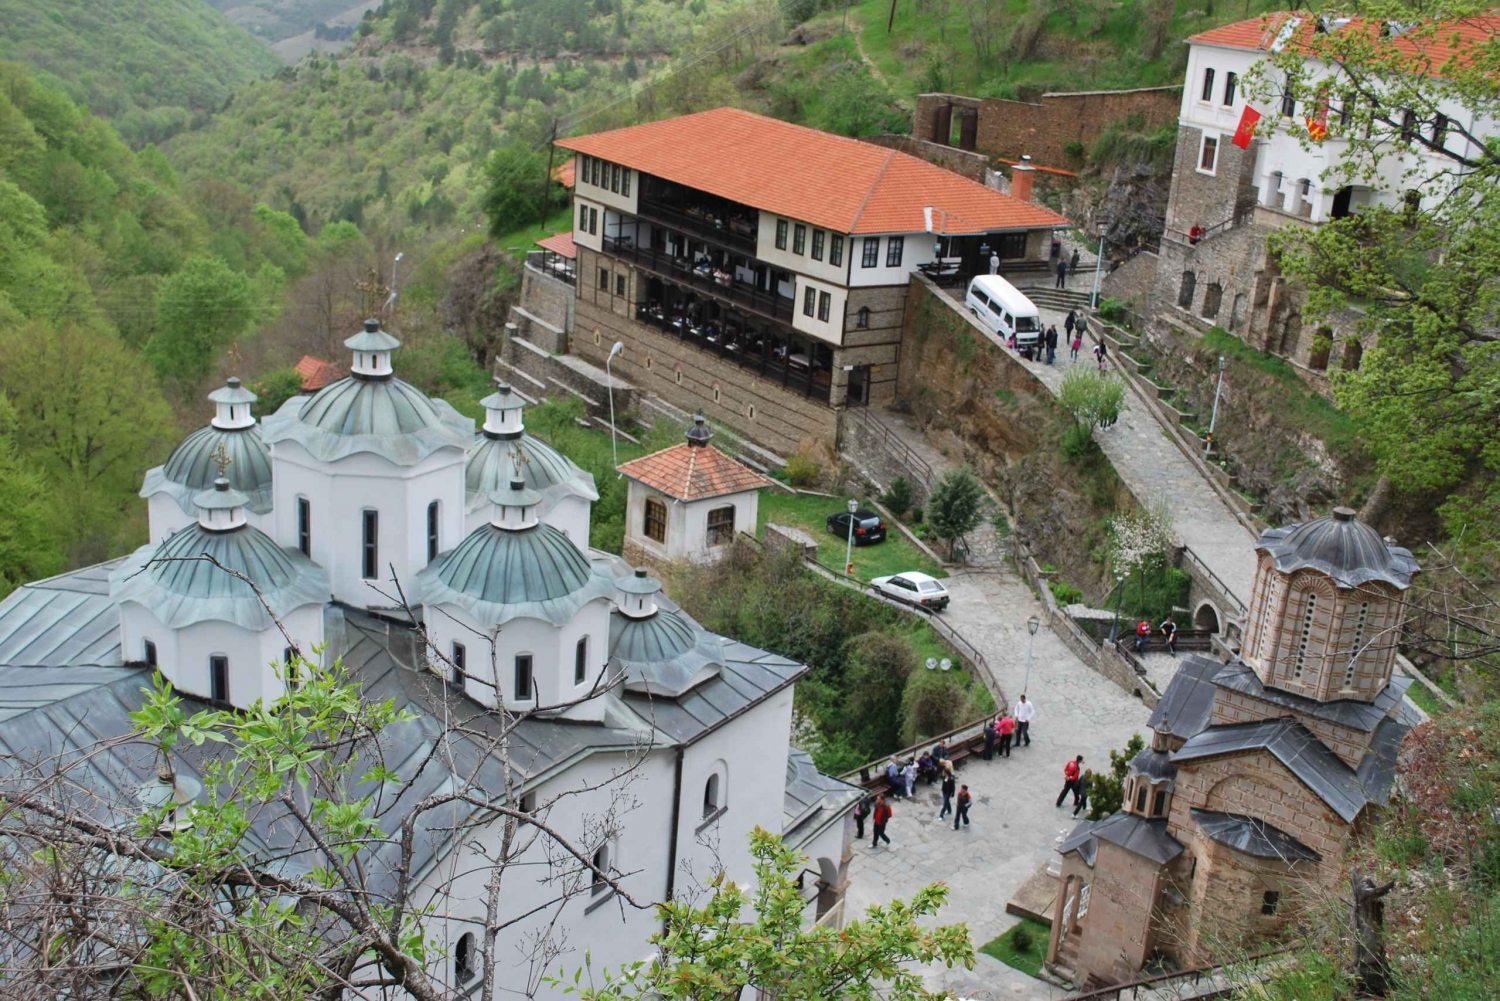 Skopje: Obserwatorium Kokino i klasztor Osogovo - 1-dniowa wycieczka